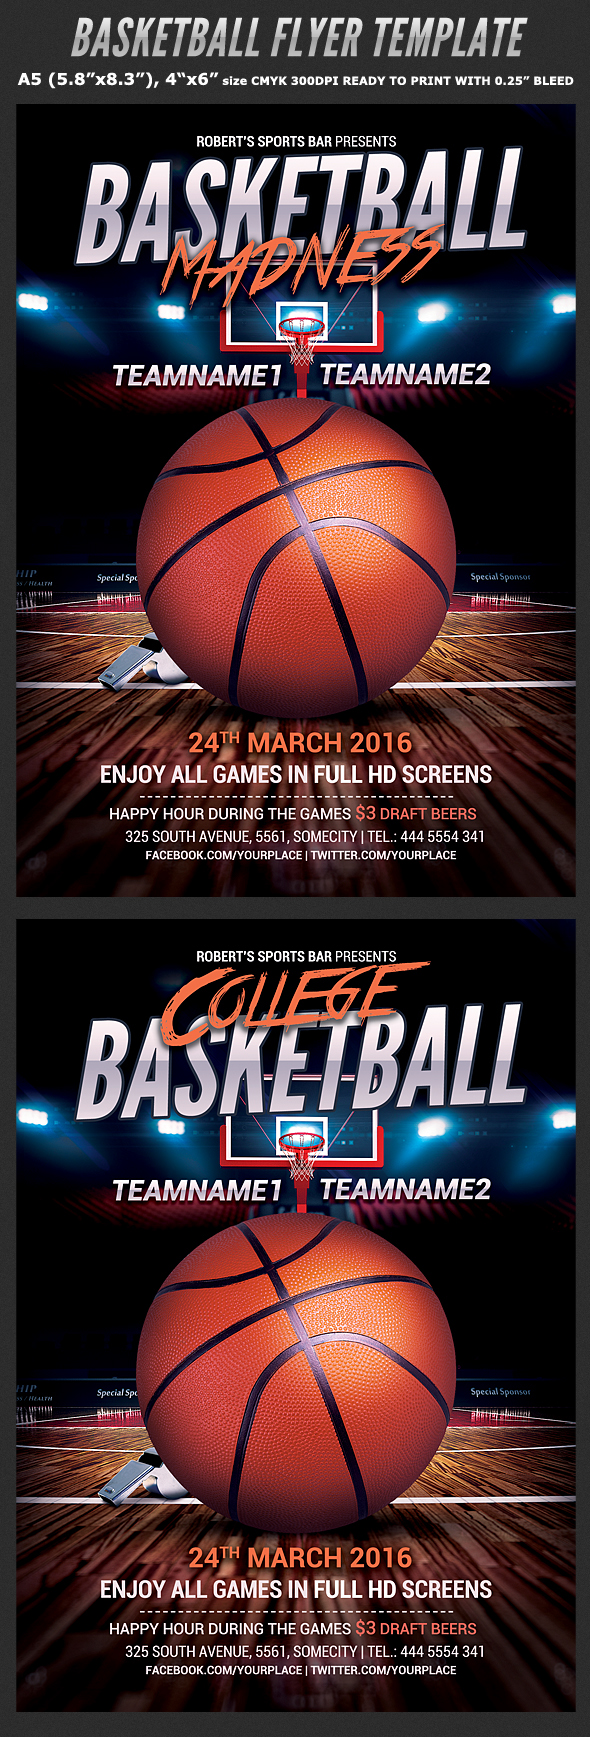 basket ball basketball college College Basketball court euroleague Event flyer template hoop march maddness NBA Playoffs poster SLAM DUNK